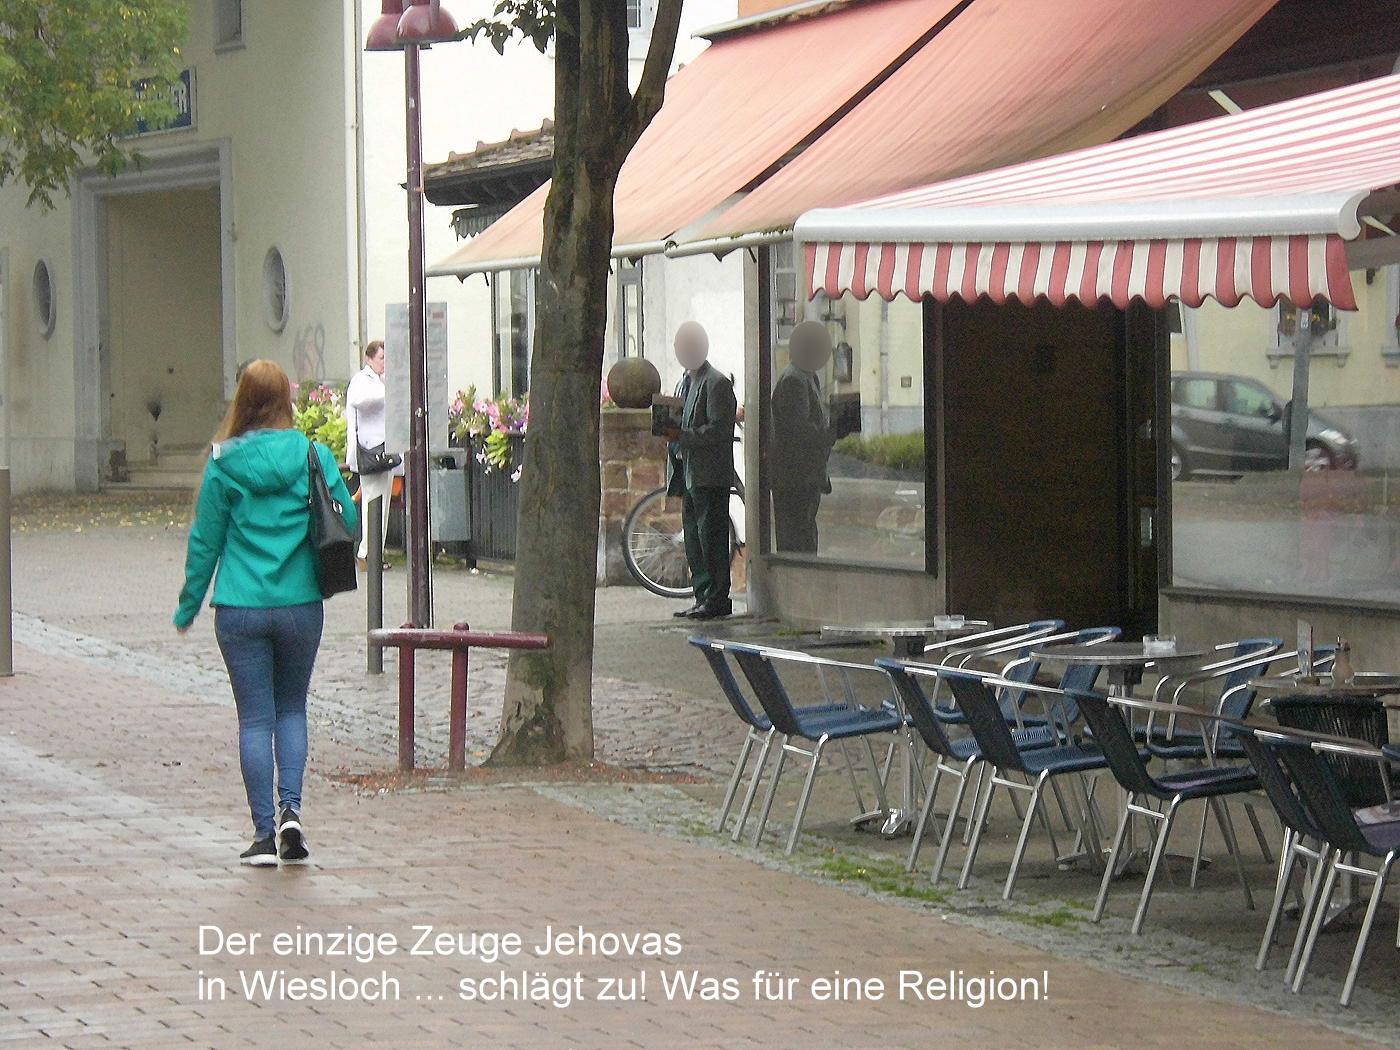 Jehovah's Witness in Wiesloch Strikes